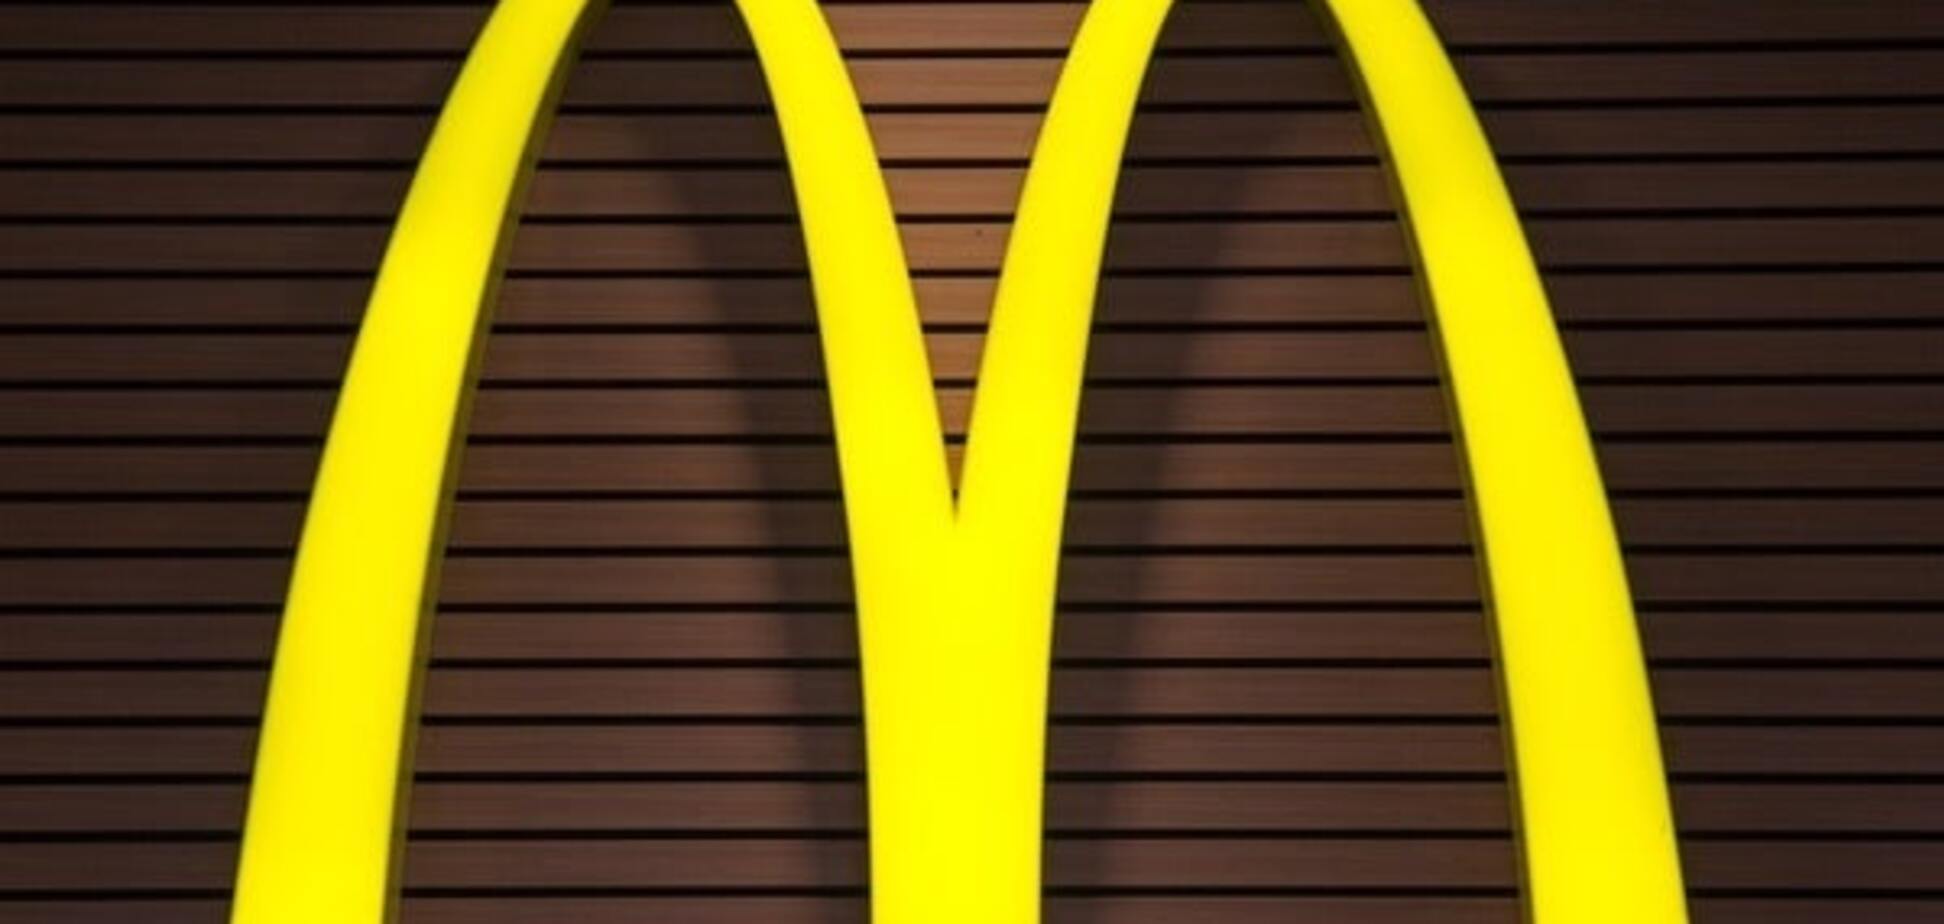 От McDonald's потребовали $500 млн налогового долга